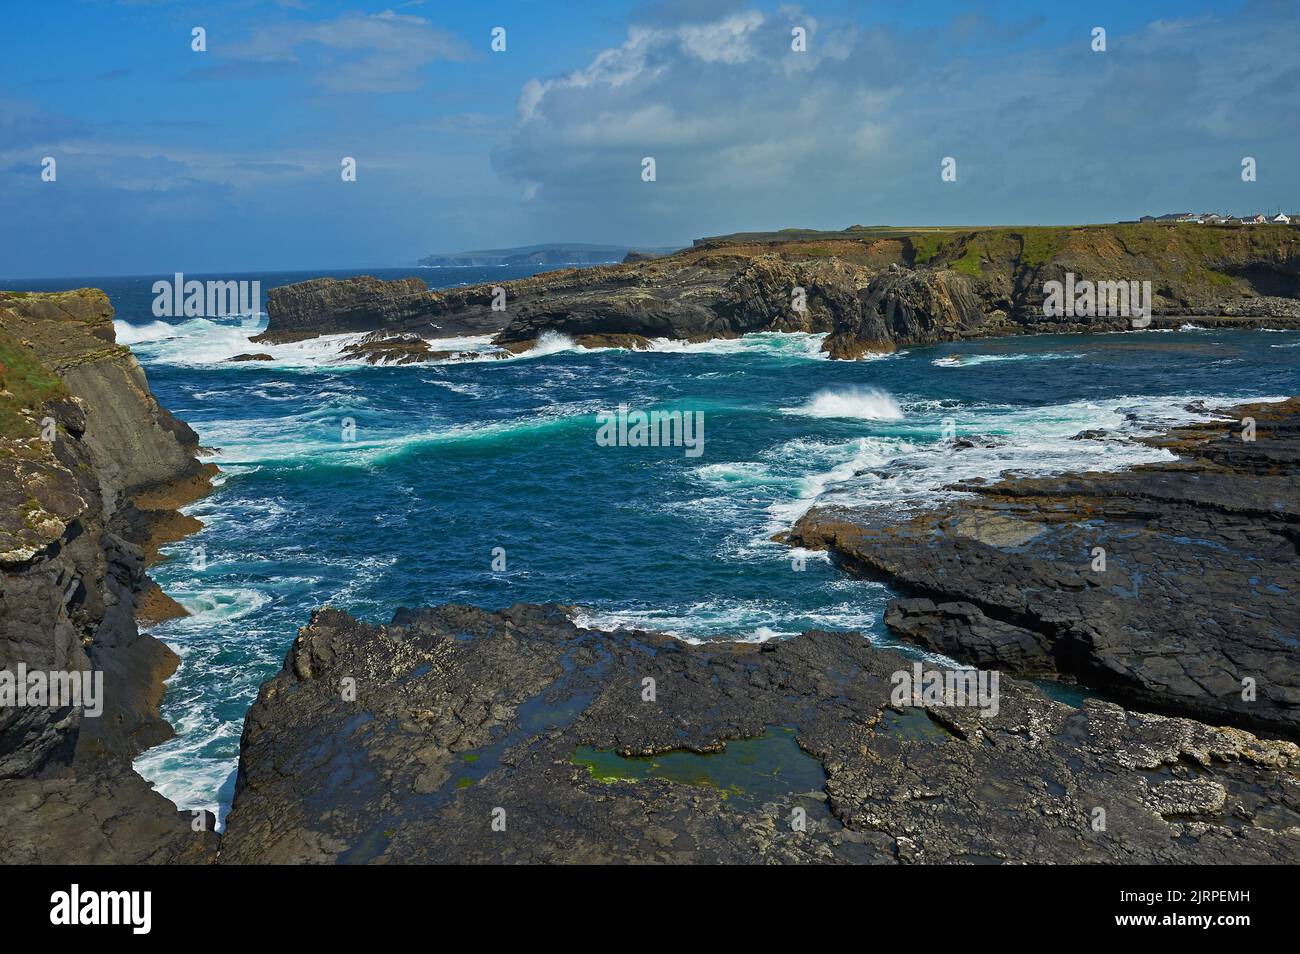 Der Atlantische Ozean trifft Land an den Brücken von Ross - Teil des Wild Atlantic Way - auf der Loop Head Halbinsel, County Clare, Republik Irland Stockfoto